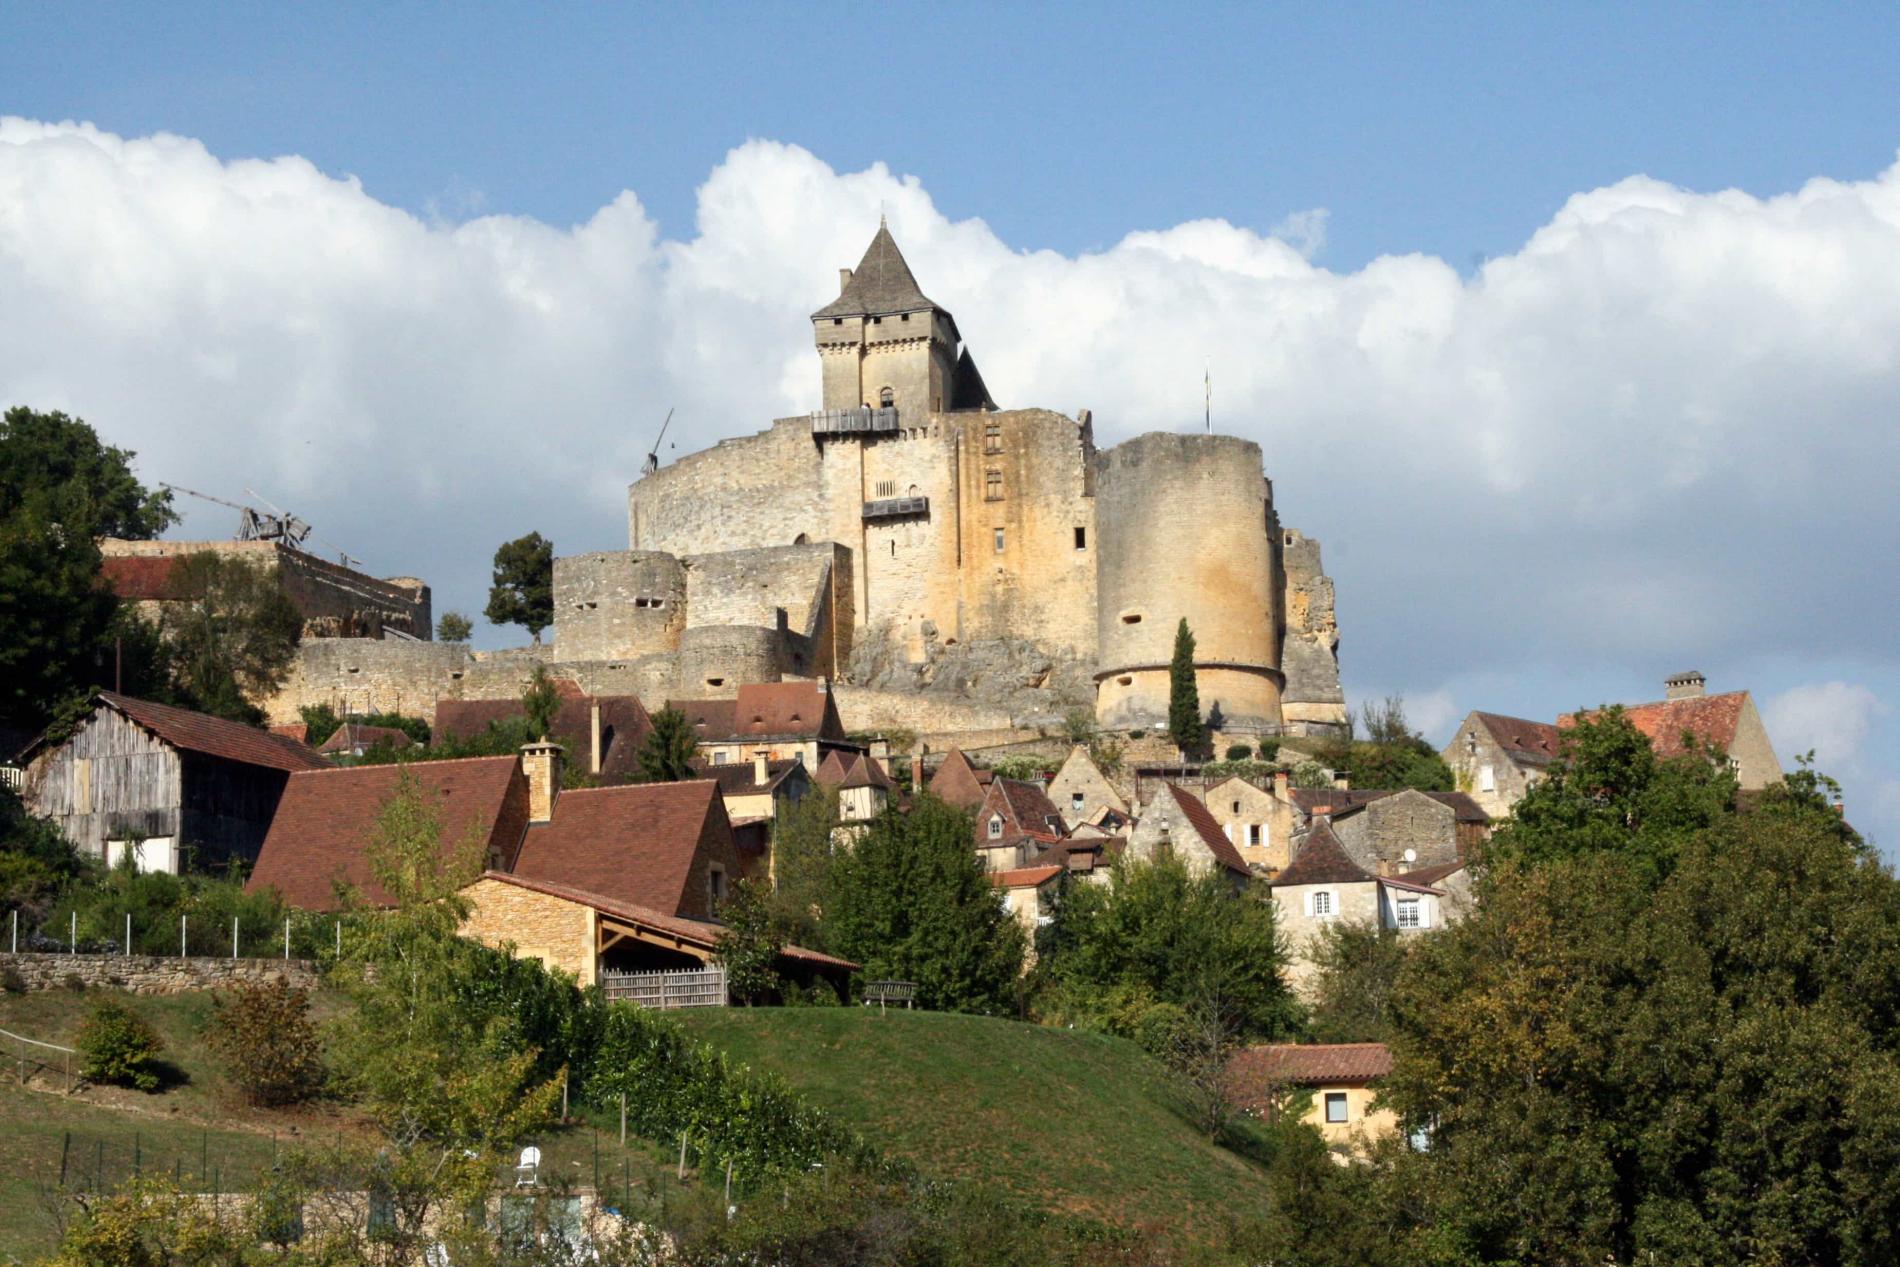  Chateau de Castelnaud  la chapelle